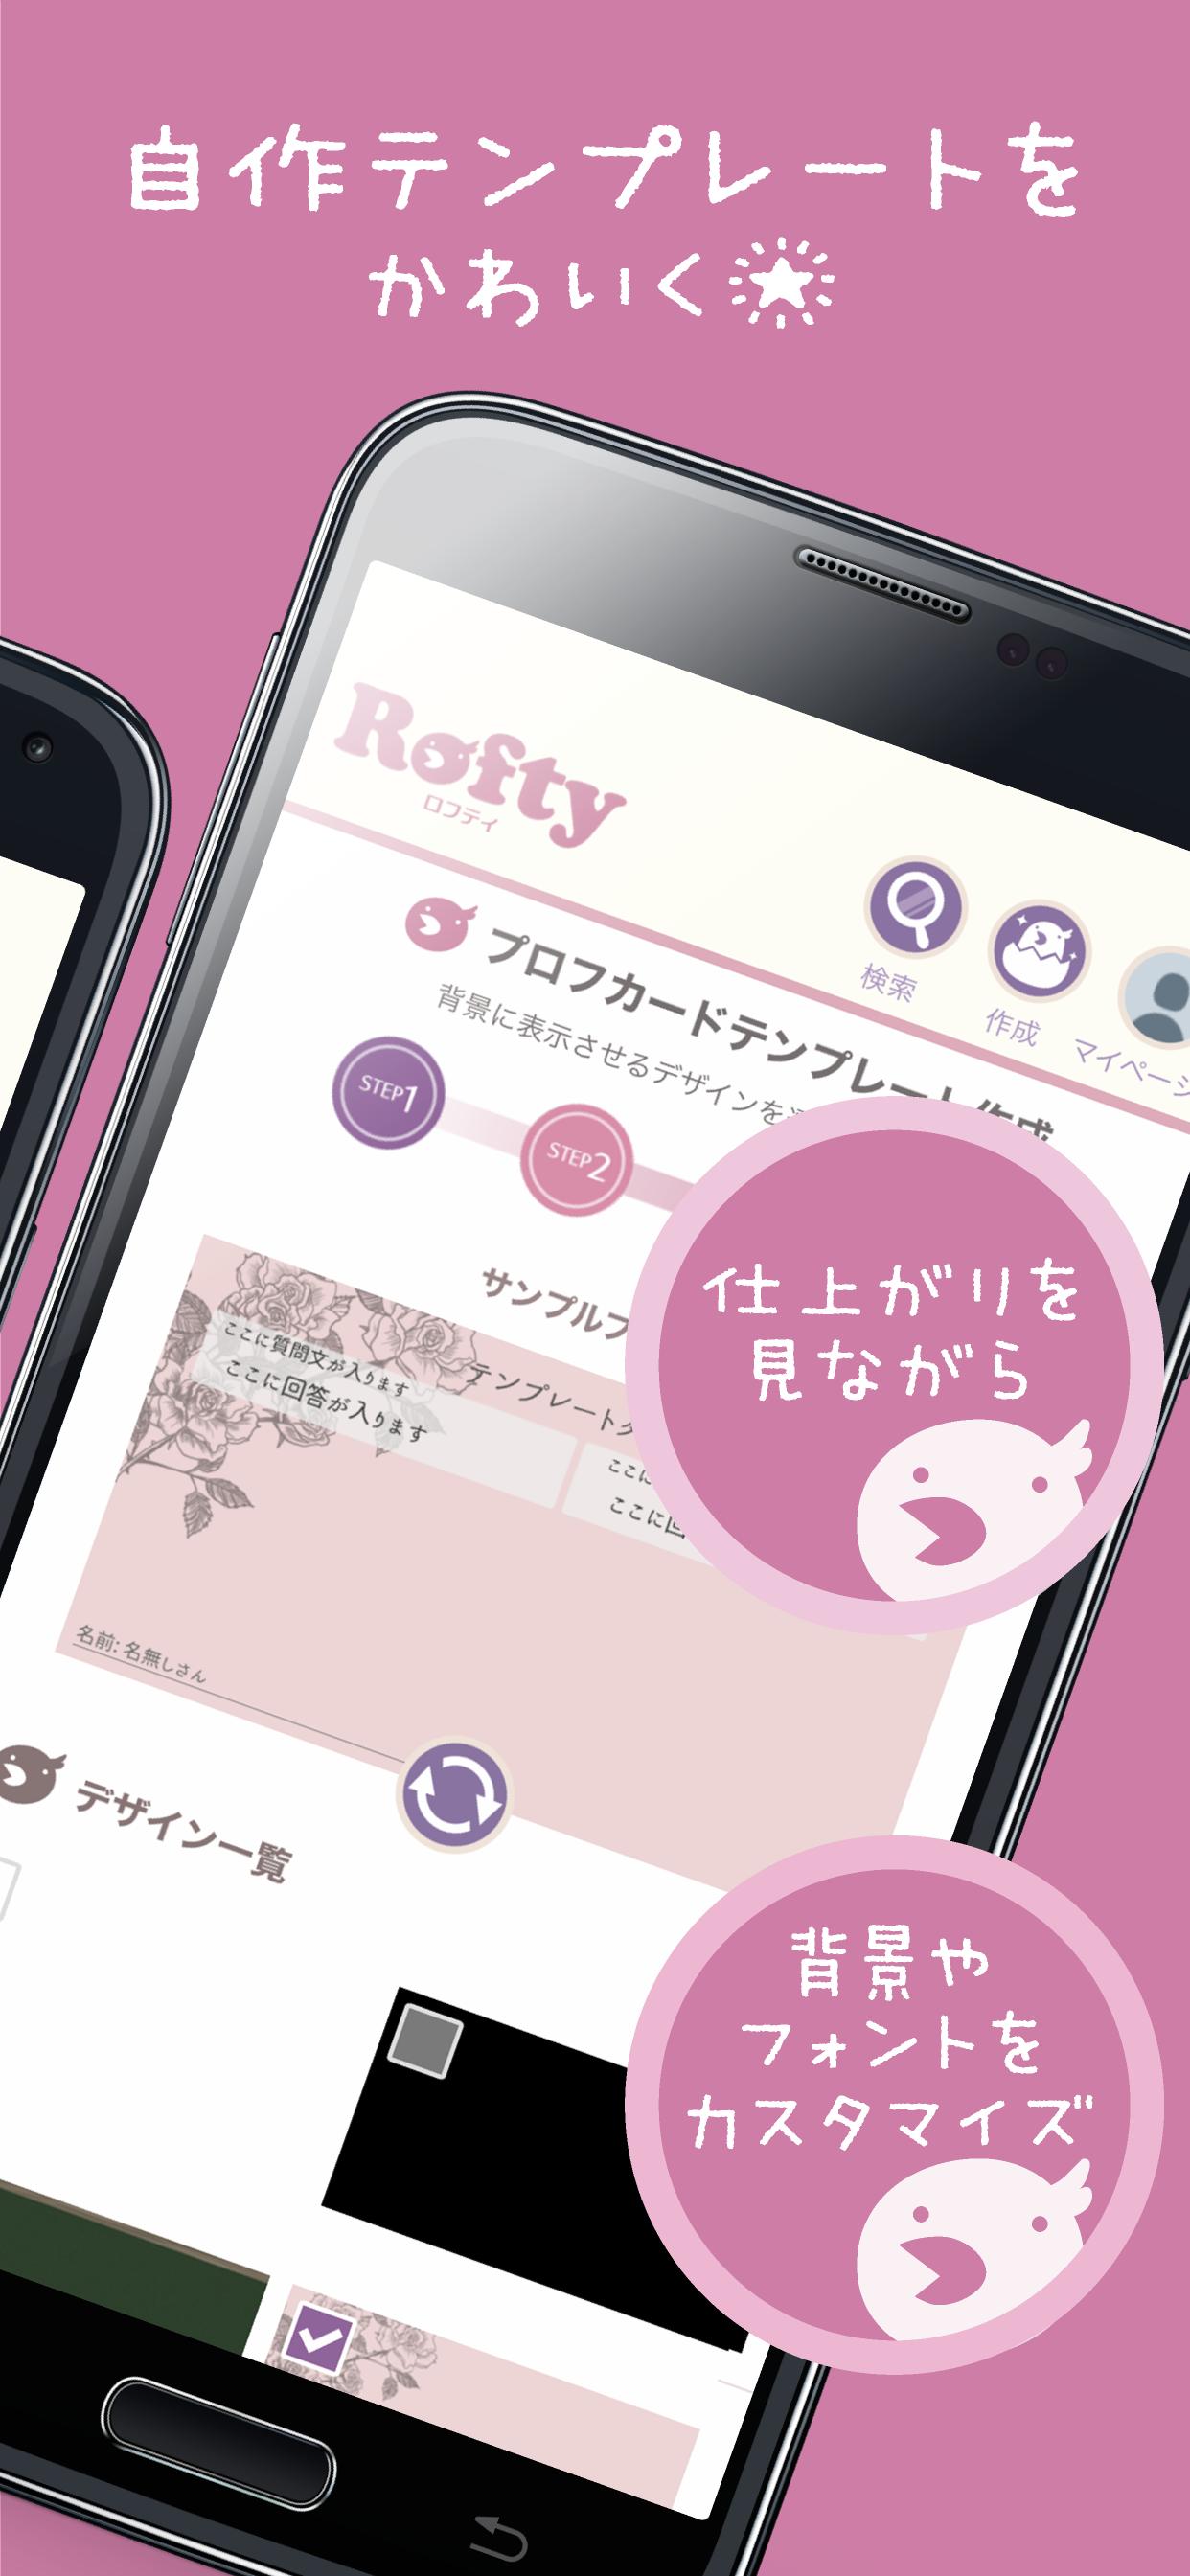 Rofty ロフティ プロフカードをアプリで作成 懐かしのプロフィール帳をオンラインで集める安卓下载 安卓版apk 免费下载